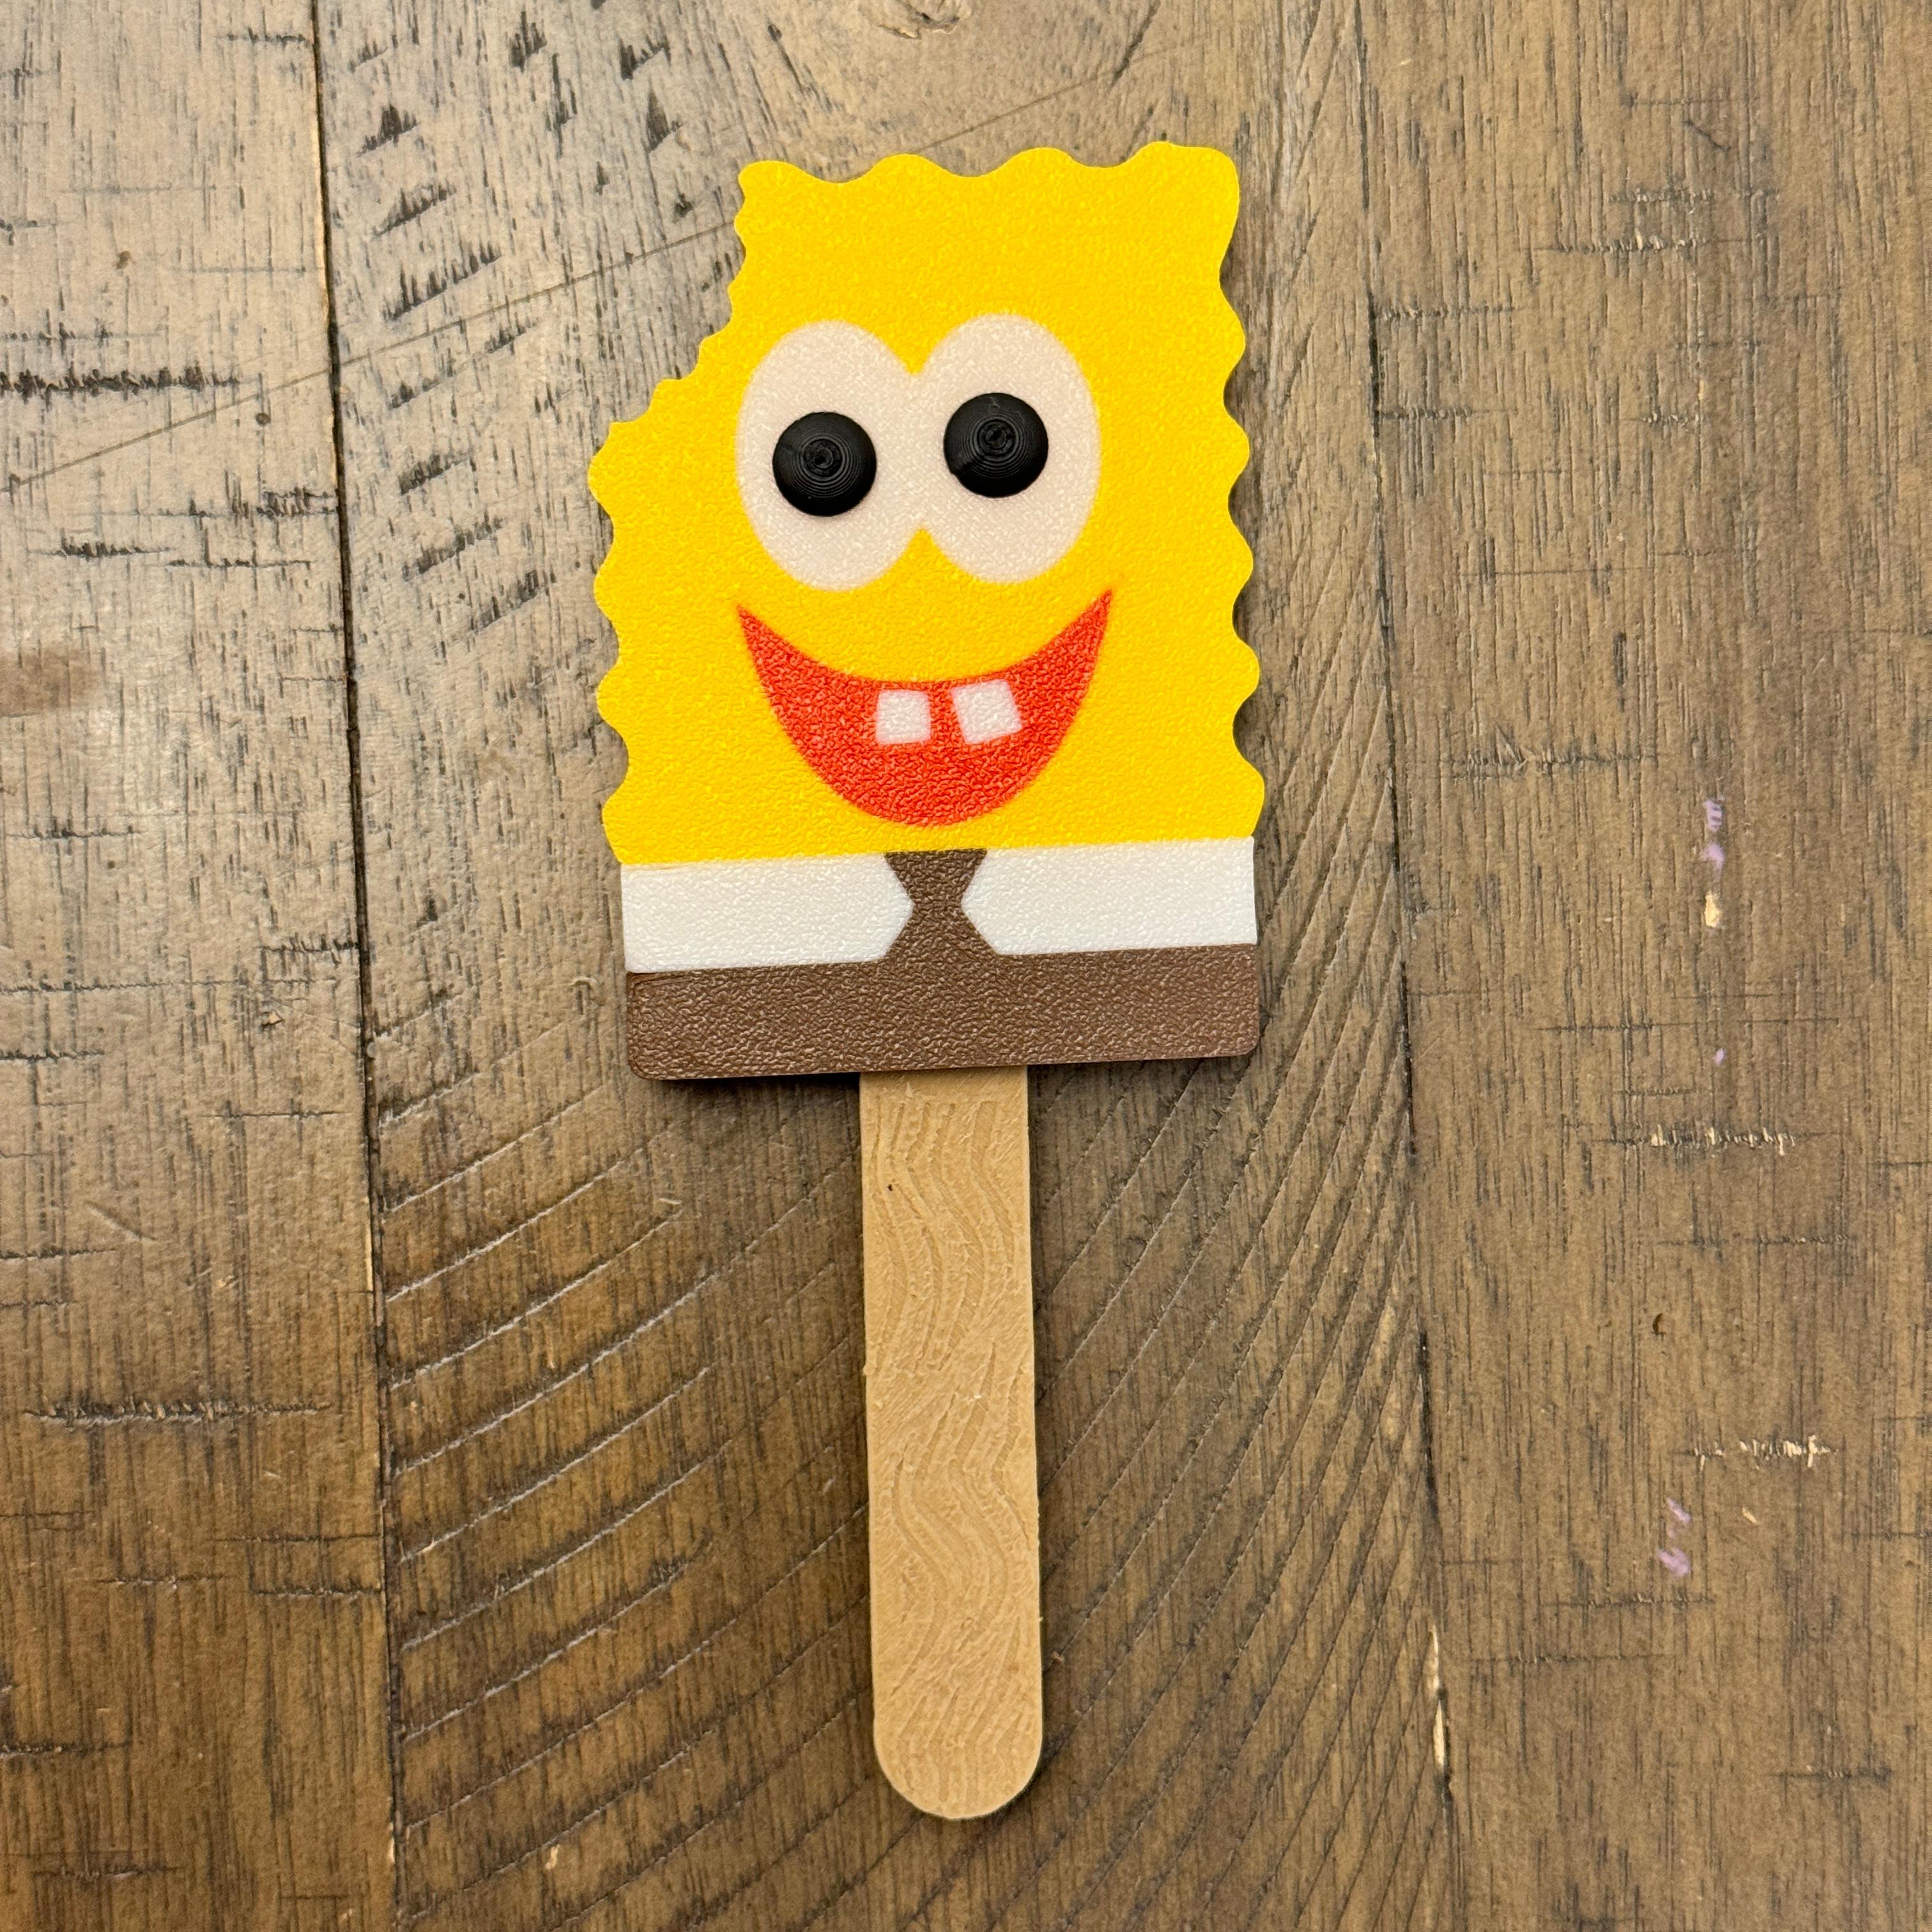 FREE Sponge Popsicle 3d model